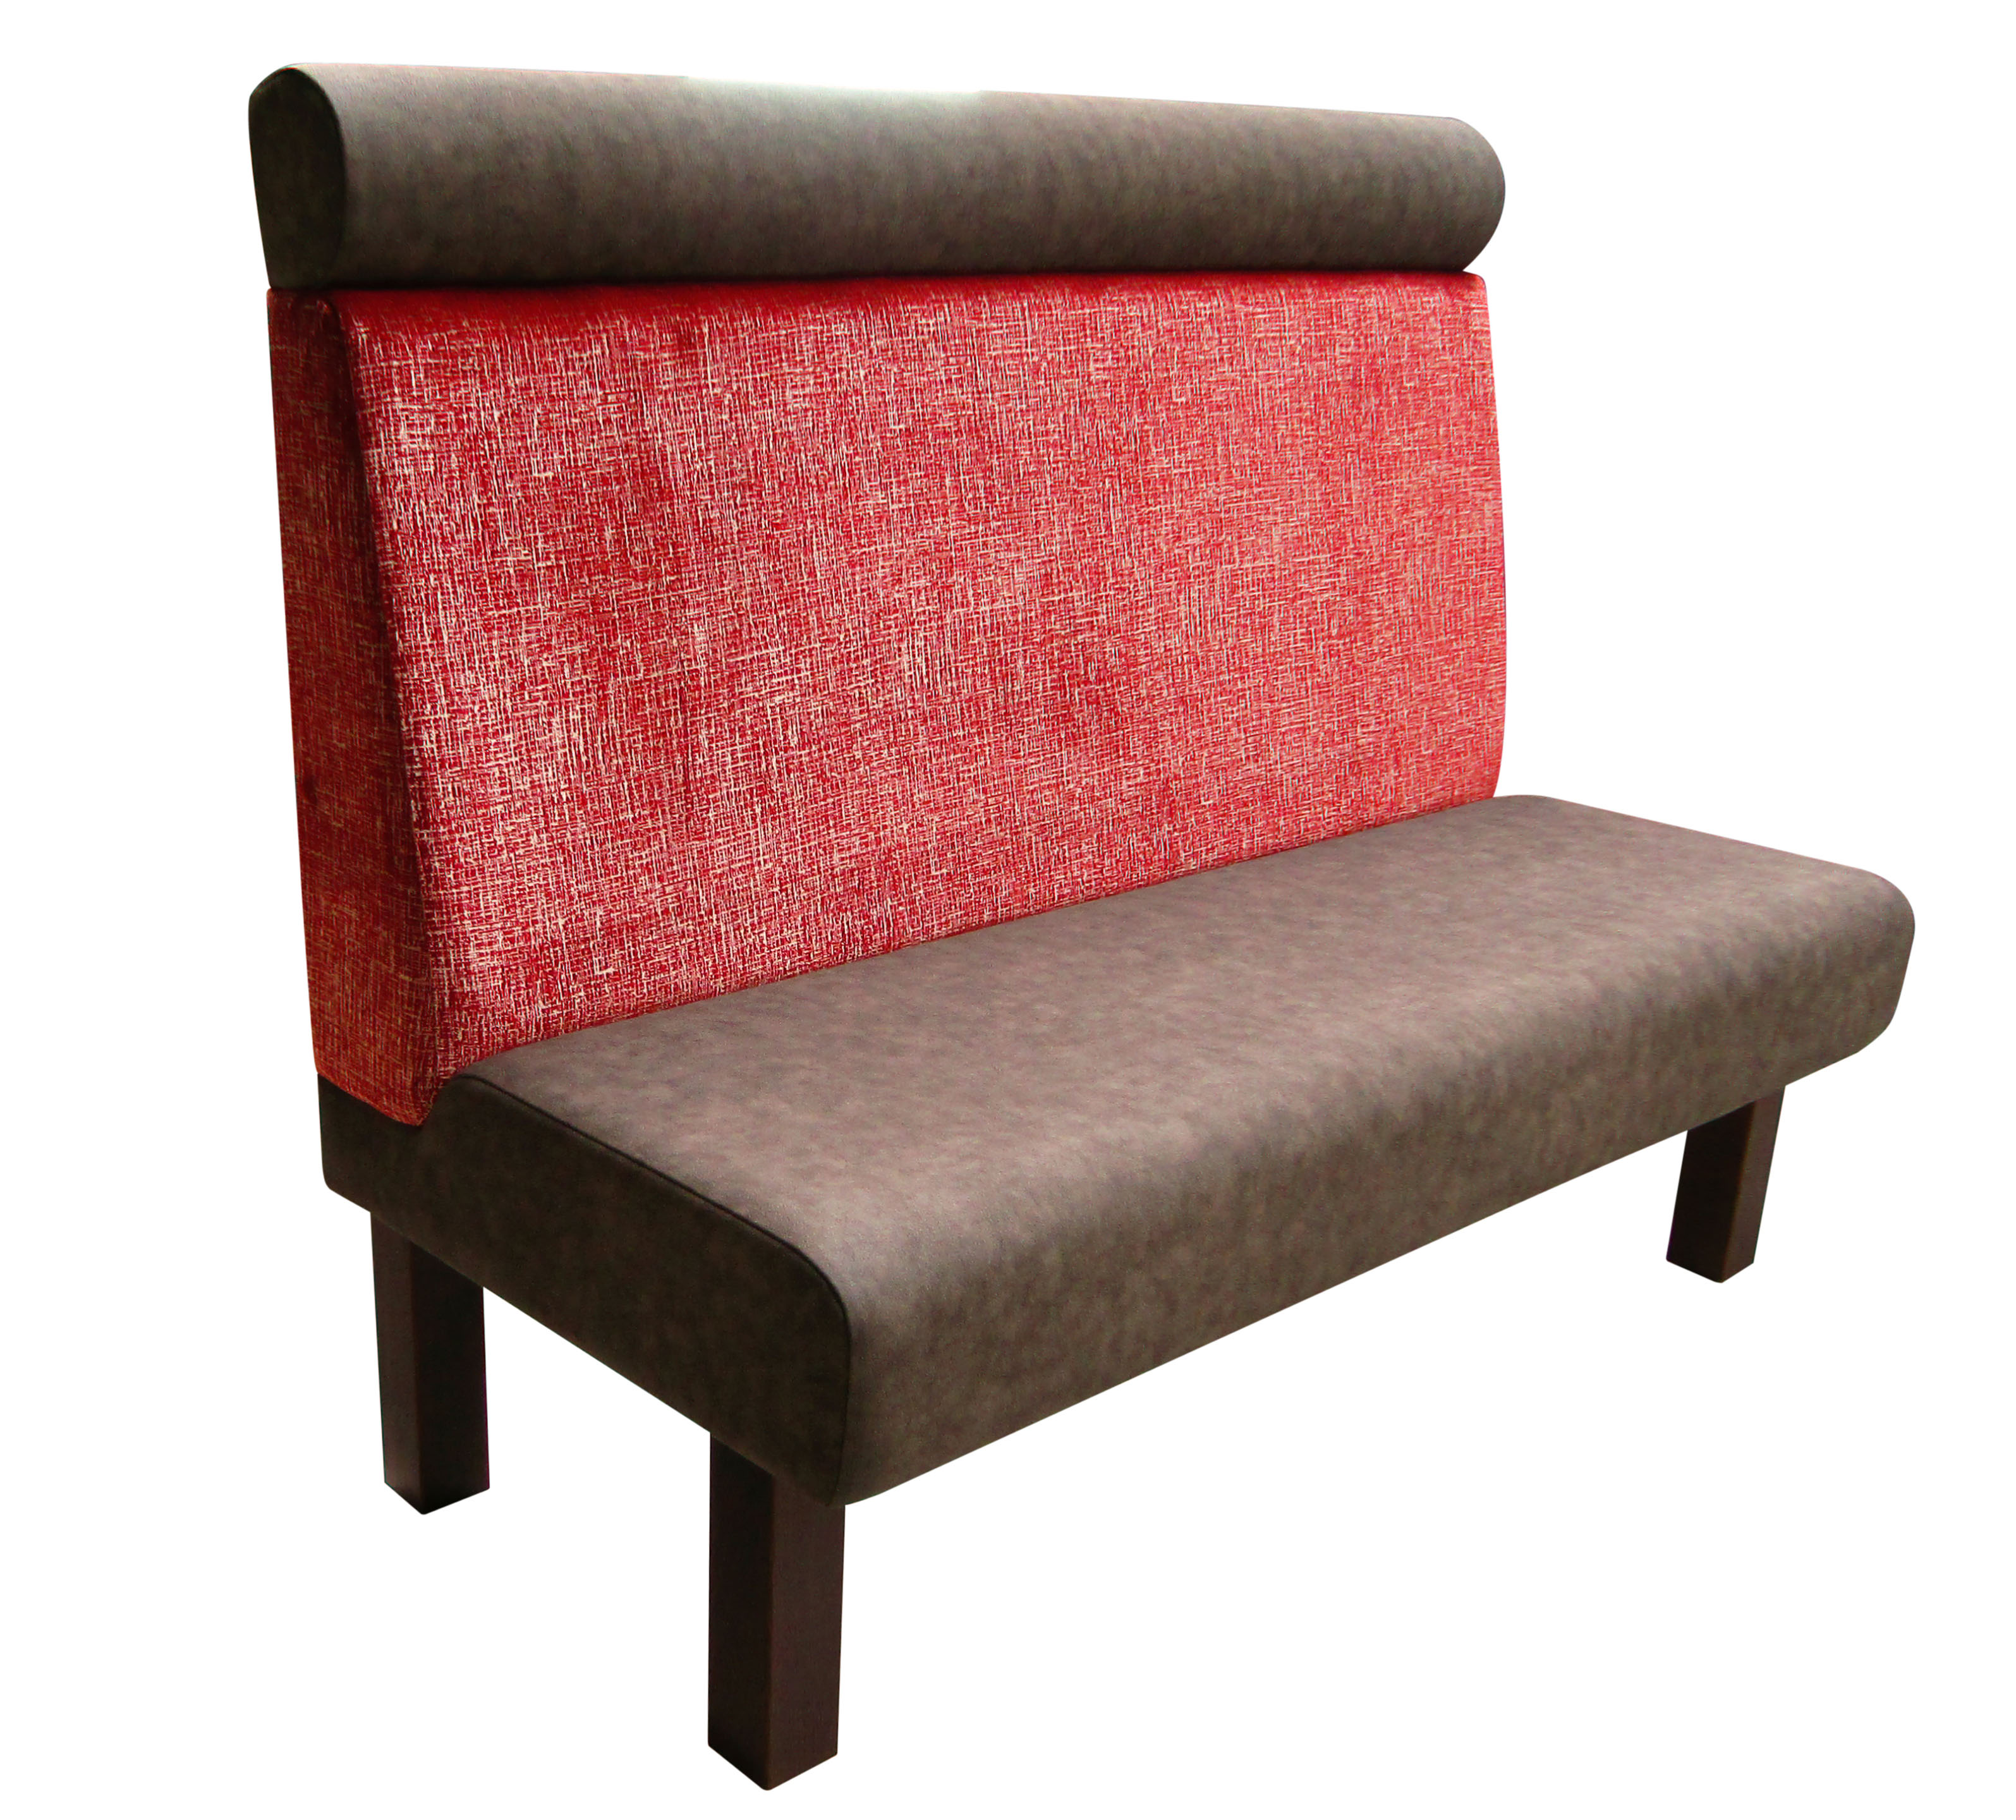 Vollpolsterbank mit Stollenfüßen.  Stollen aus Buchenholz, dunkel gebeizt. Sitzfläche und Nackenrolle bezogen mit braun-grauen Kunstleder. Der Rücken ist mit einem roten Stoff bezogen.  Sitzfläche in Höhe der Kniekehle gerundet. Unterseitig  eckig.